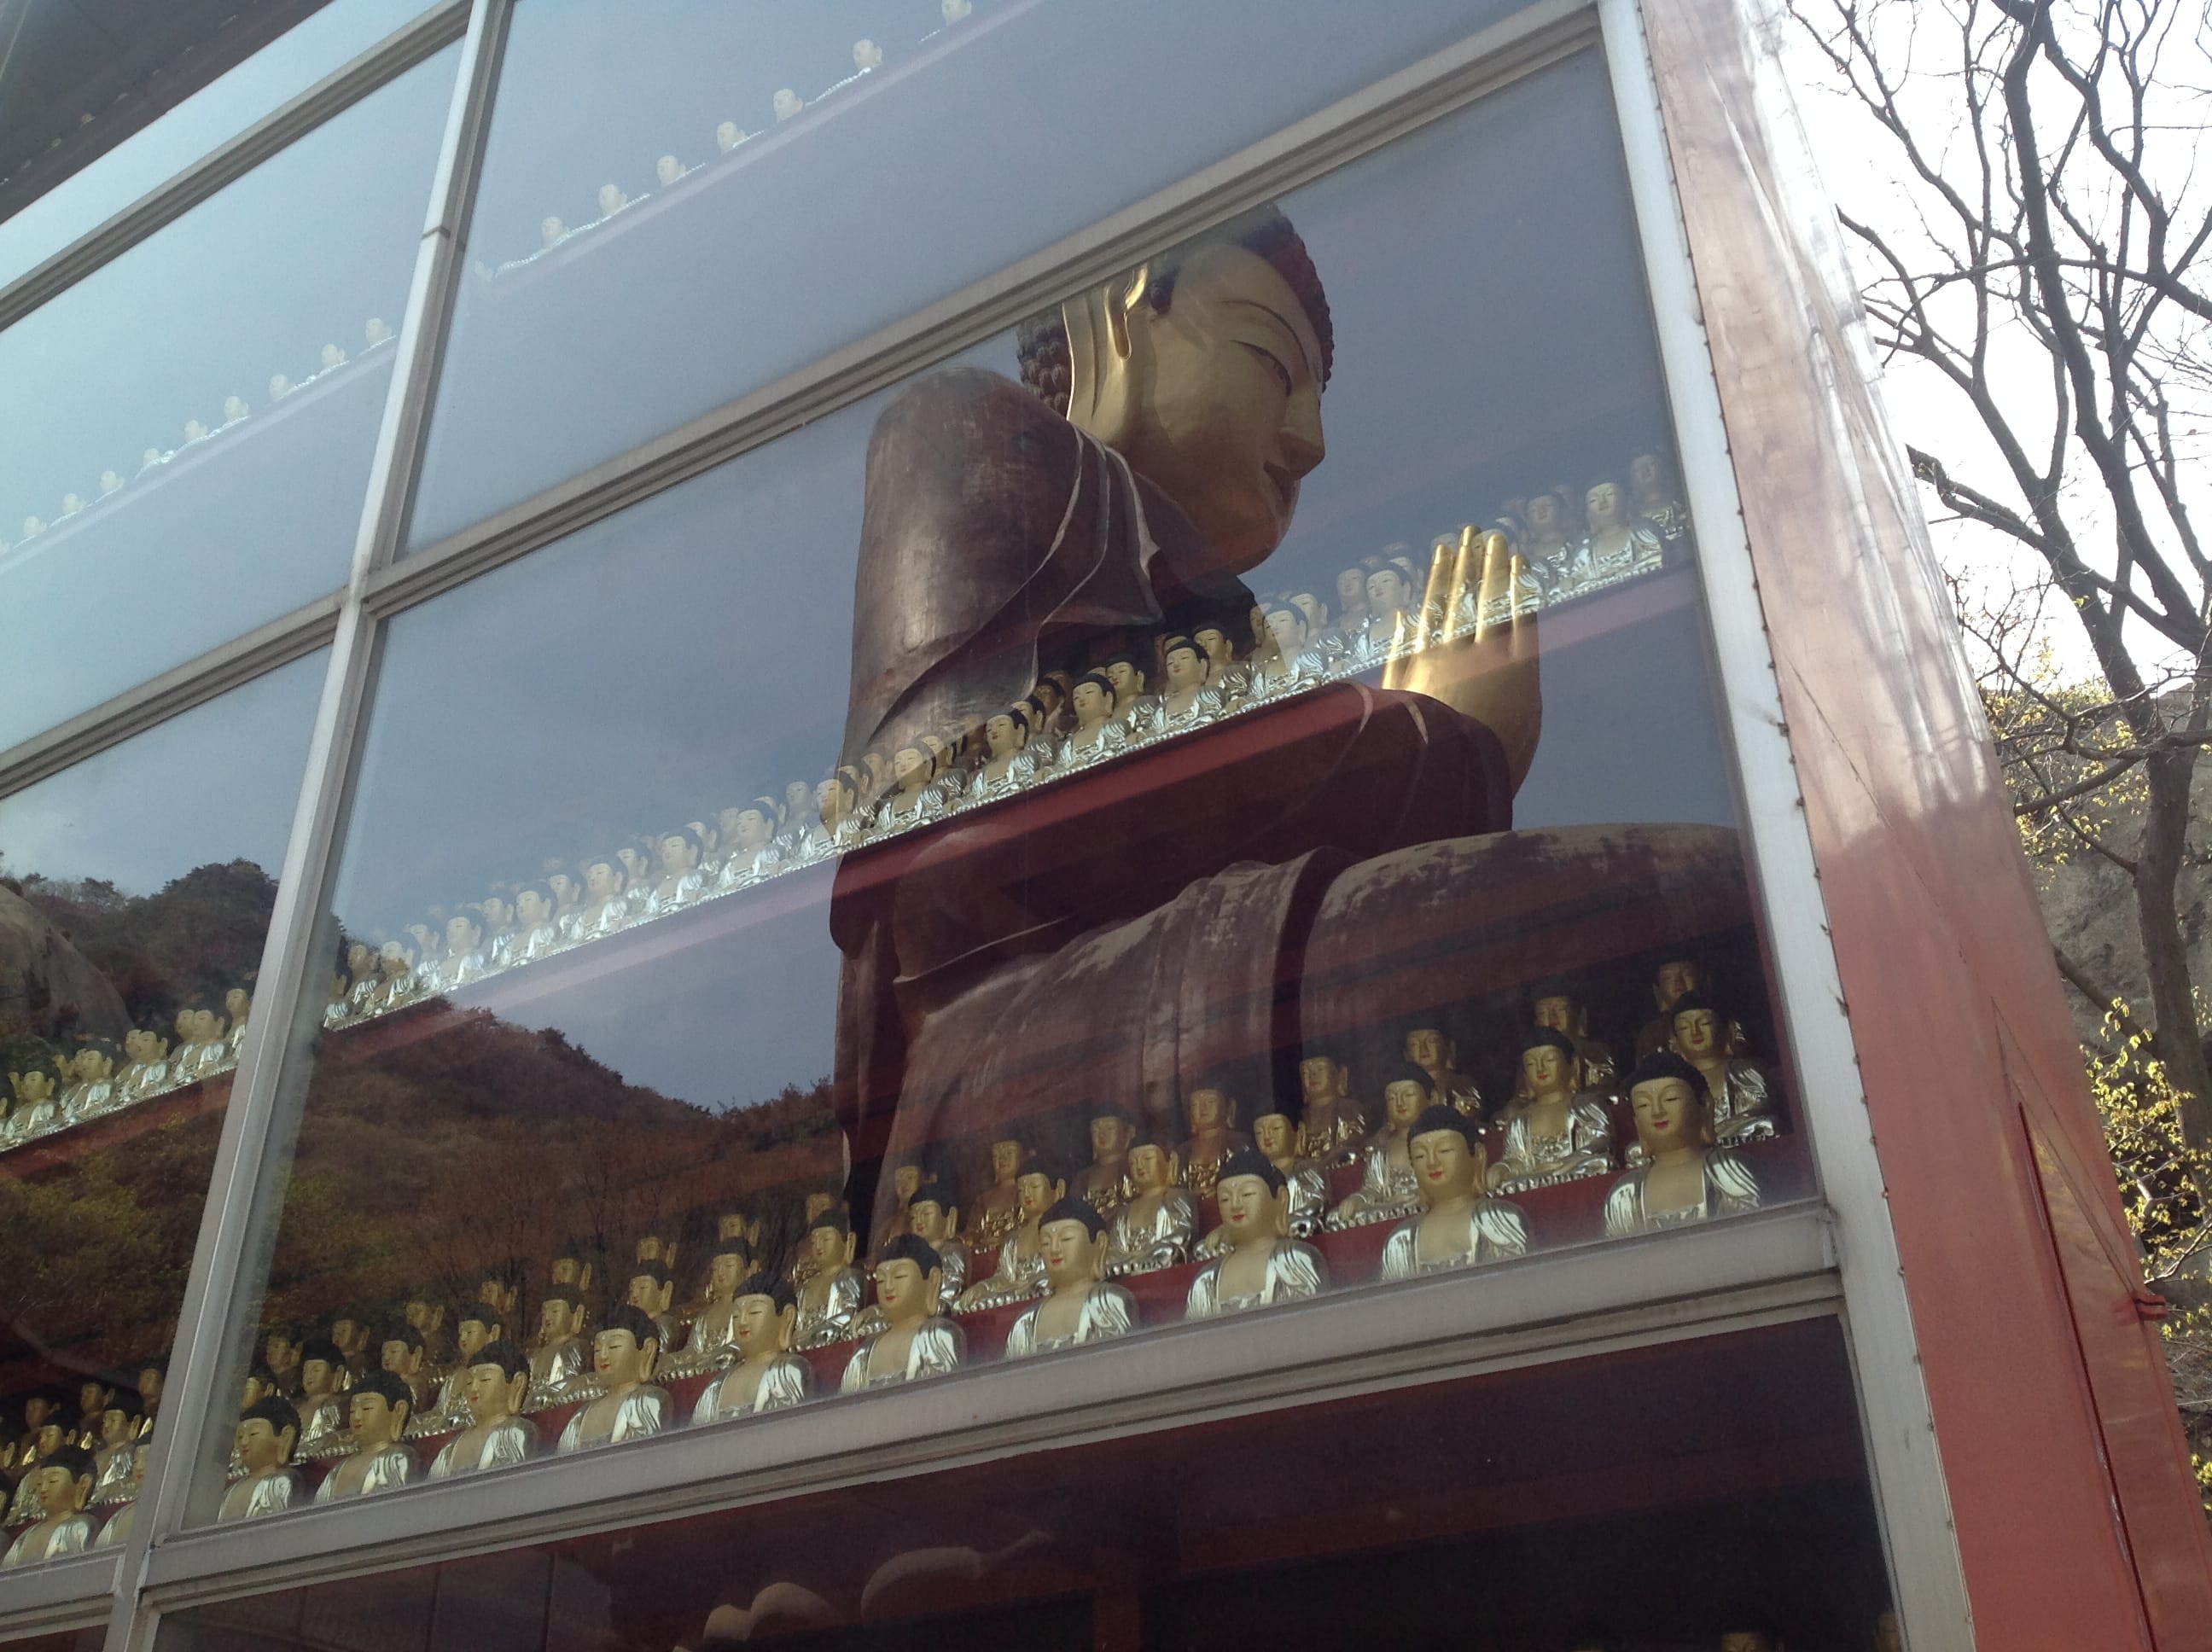 buddha statue hong kong